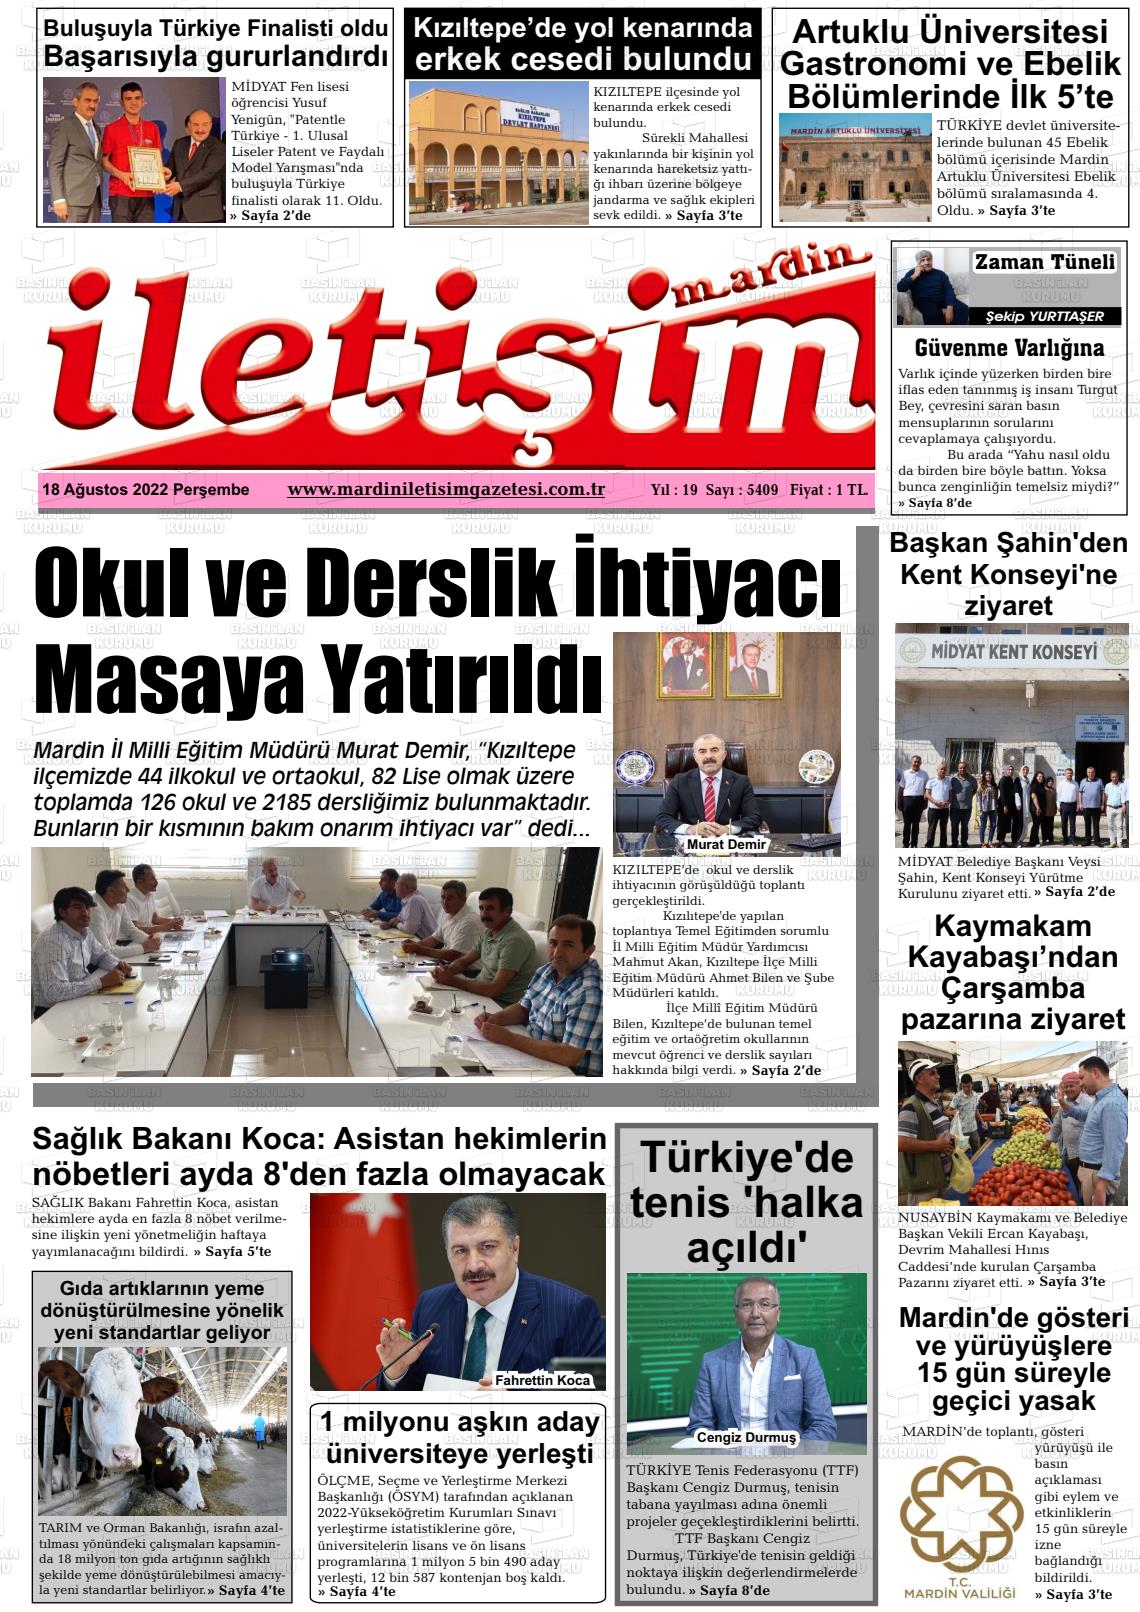 18 Ağustos 2022 Mardin İletişim Gazete Manşeti